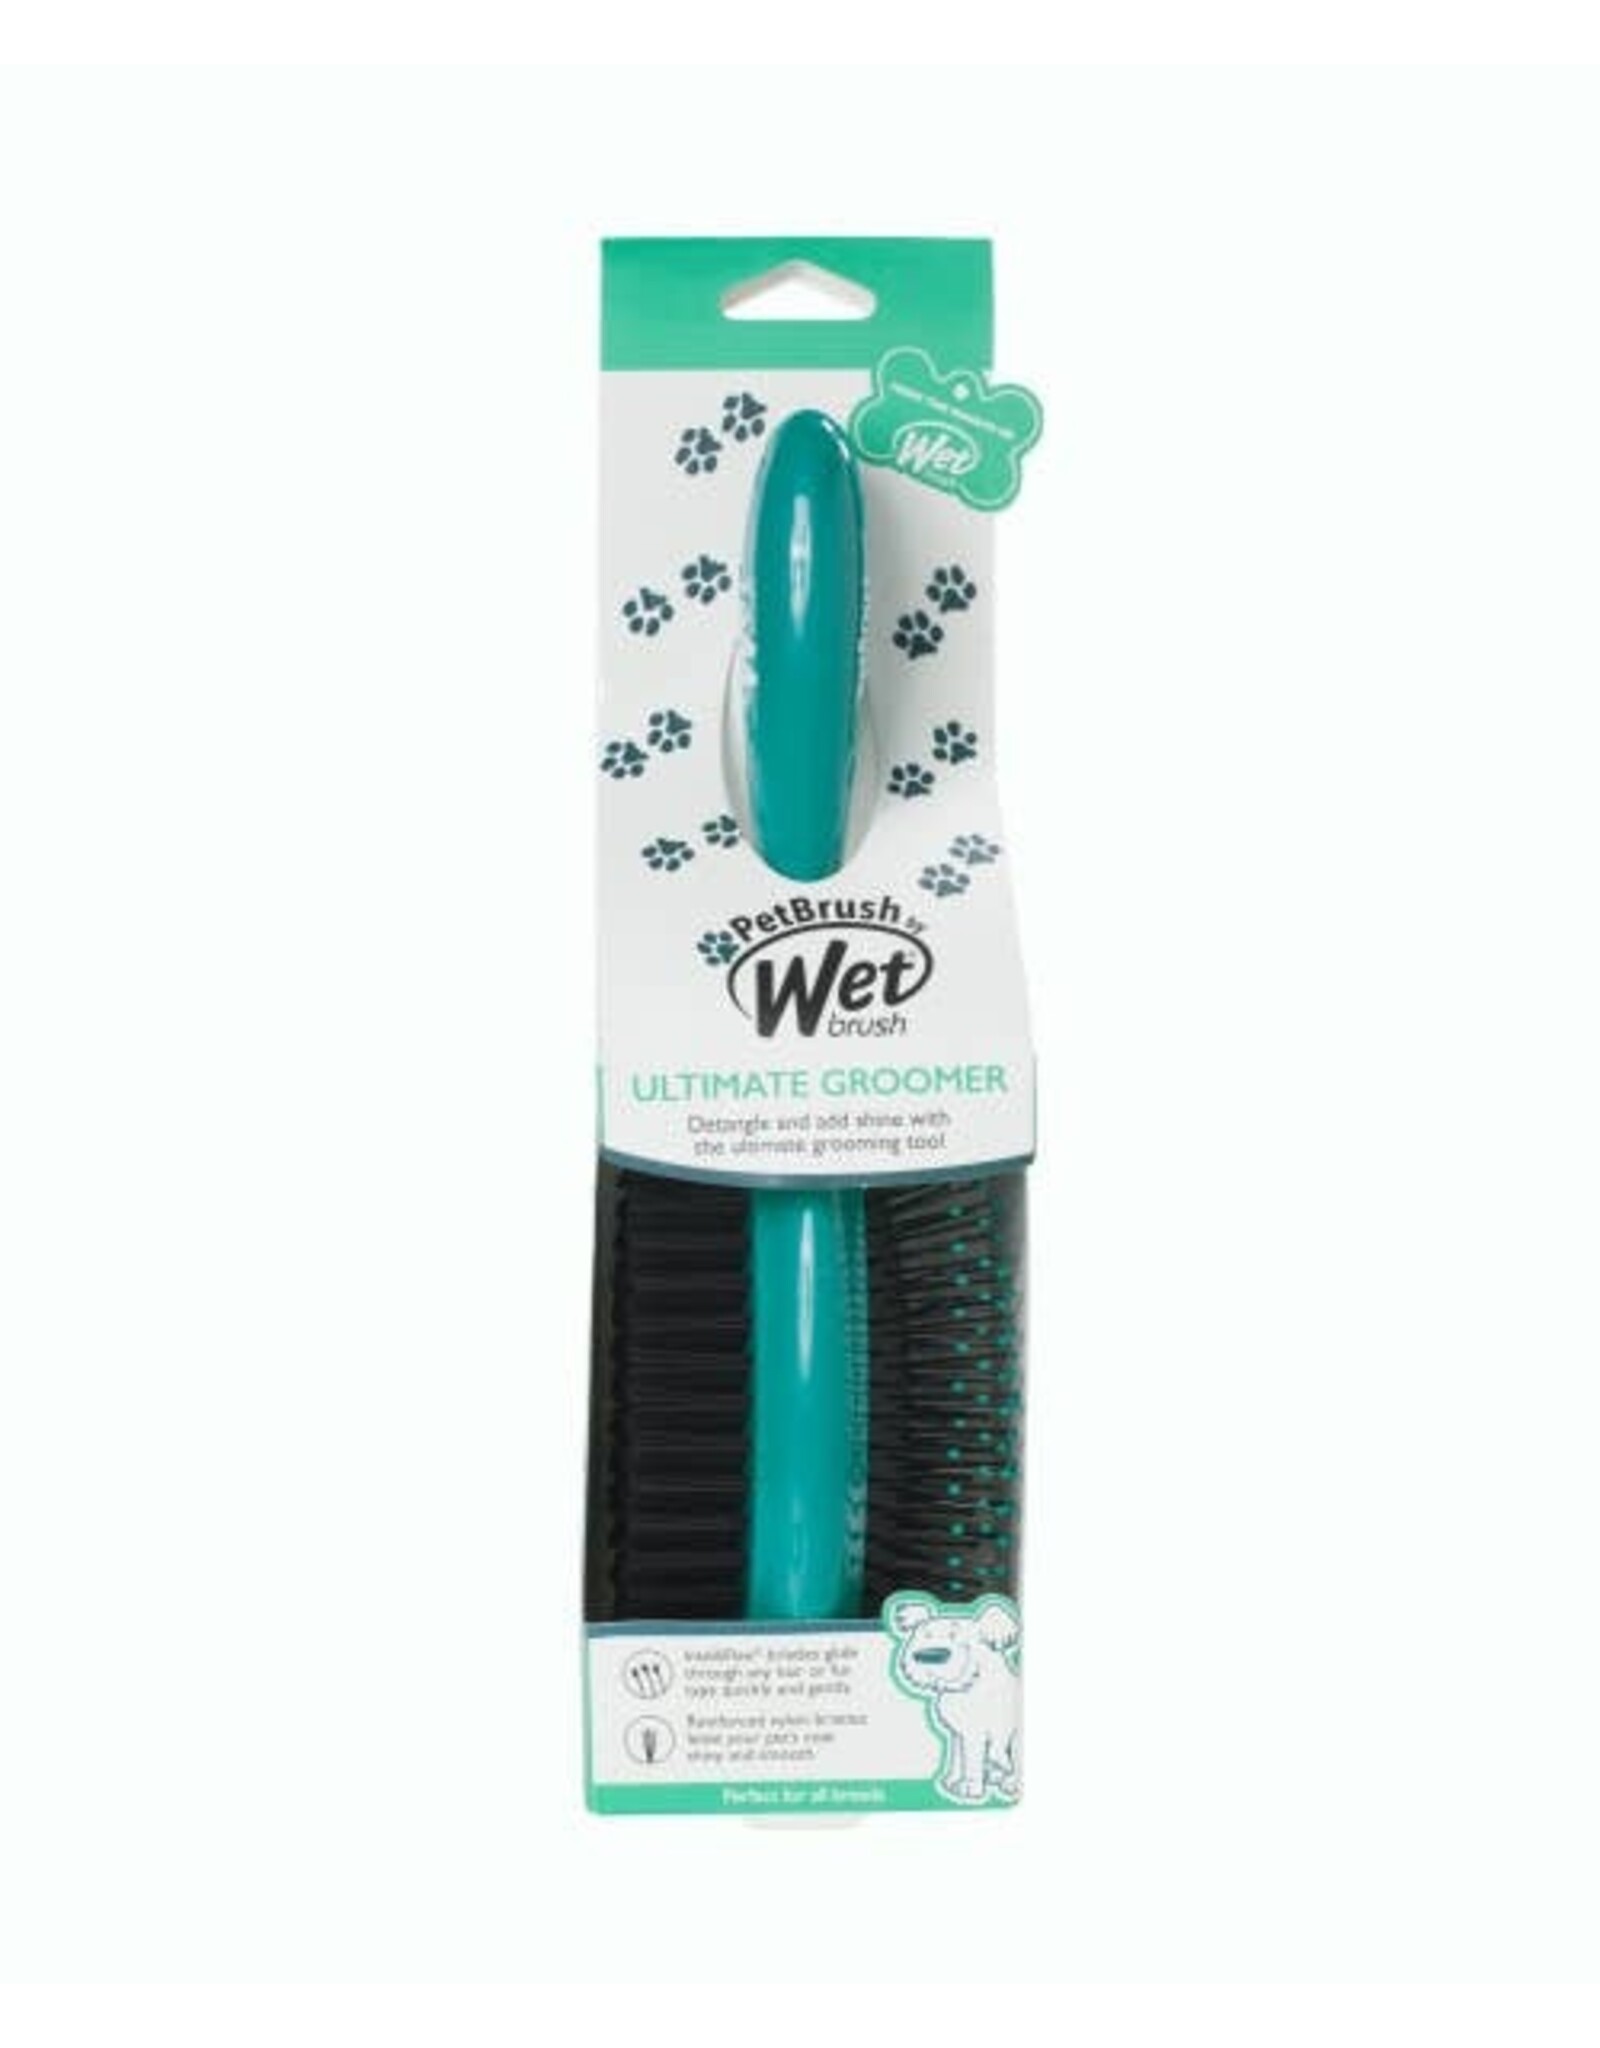 WetBrush Pet Brush Ultimate Groomer 2-in-1 Detangler